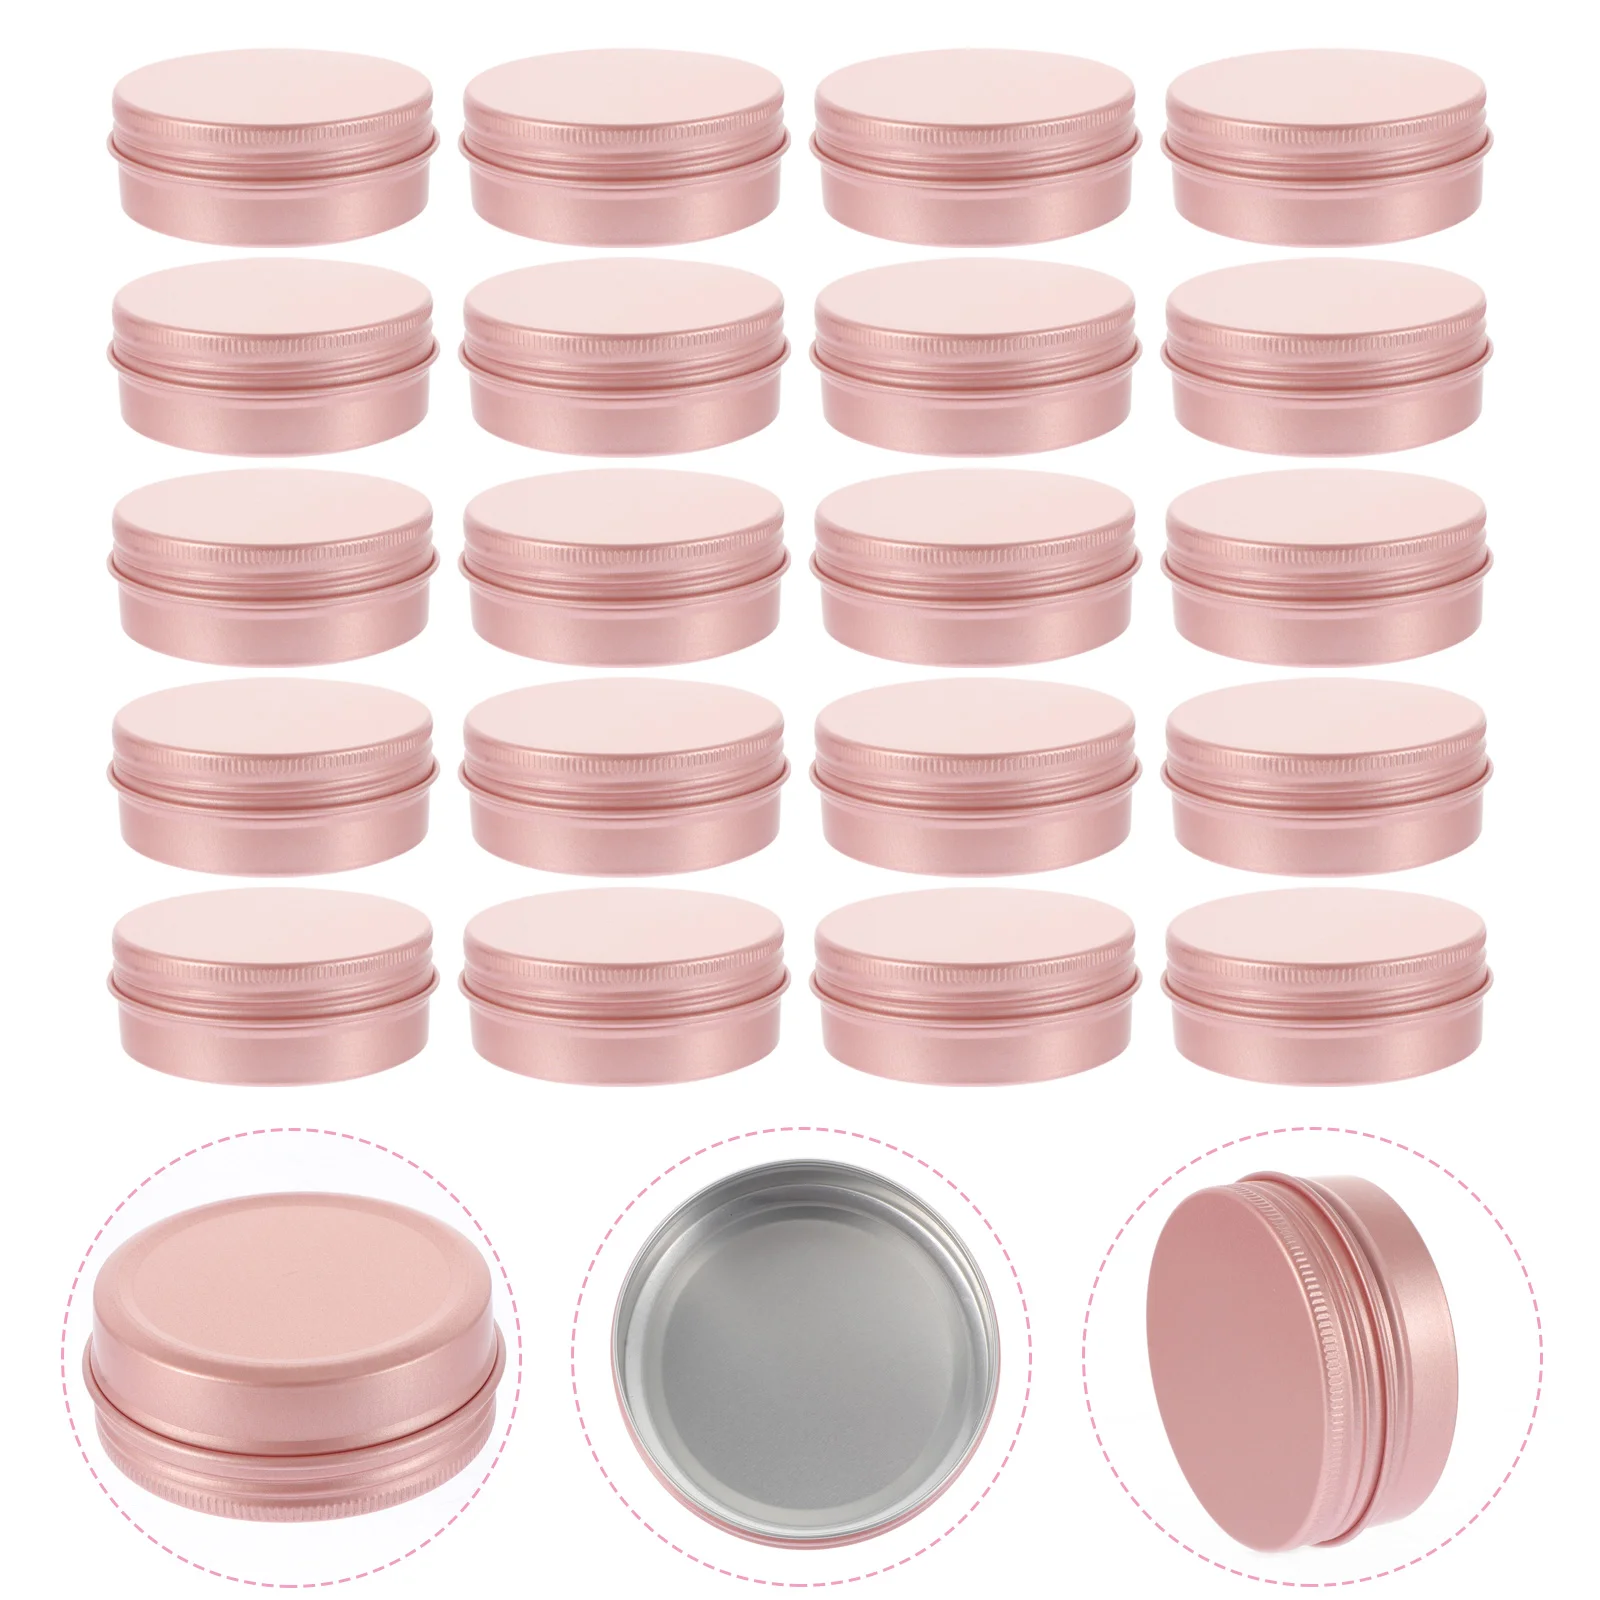 Round Aluminum Tin Jar Can: 20pcs 60ml Metal Storage Jar with Screw Lids Silver Makeup Pot Box for Lip Balm DIY Salves